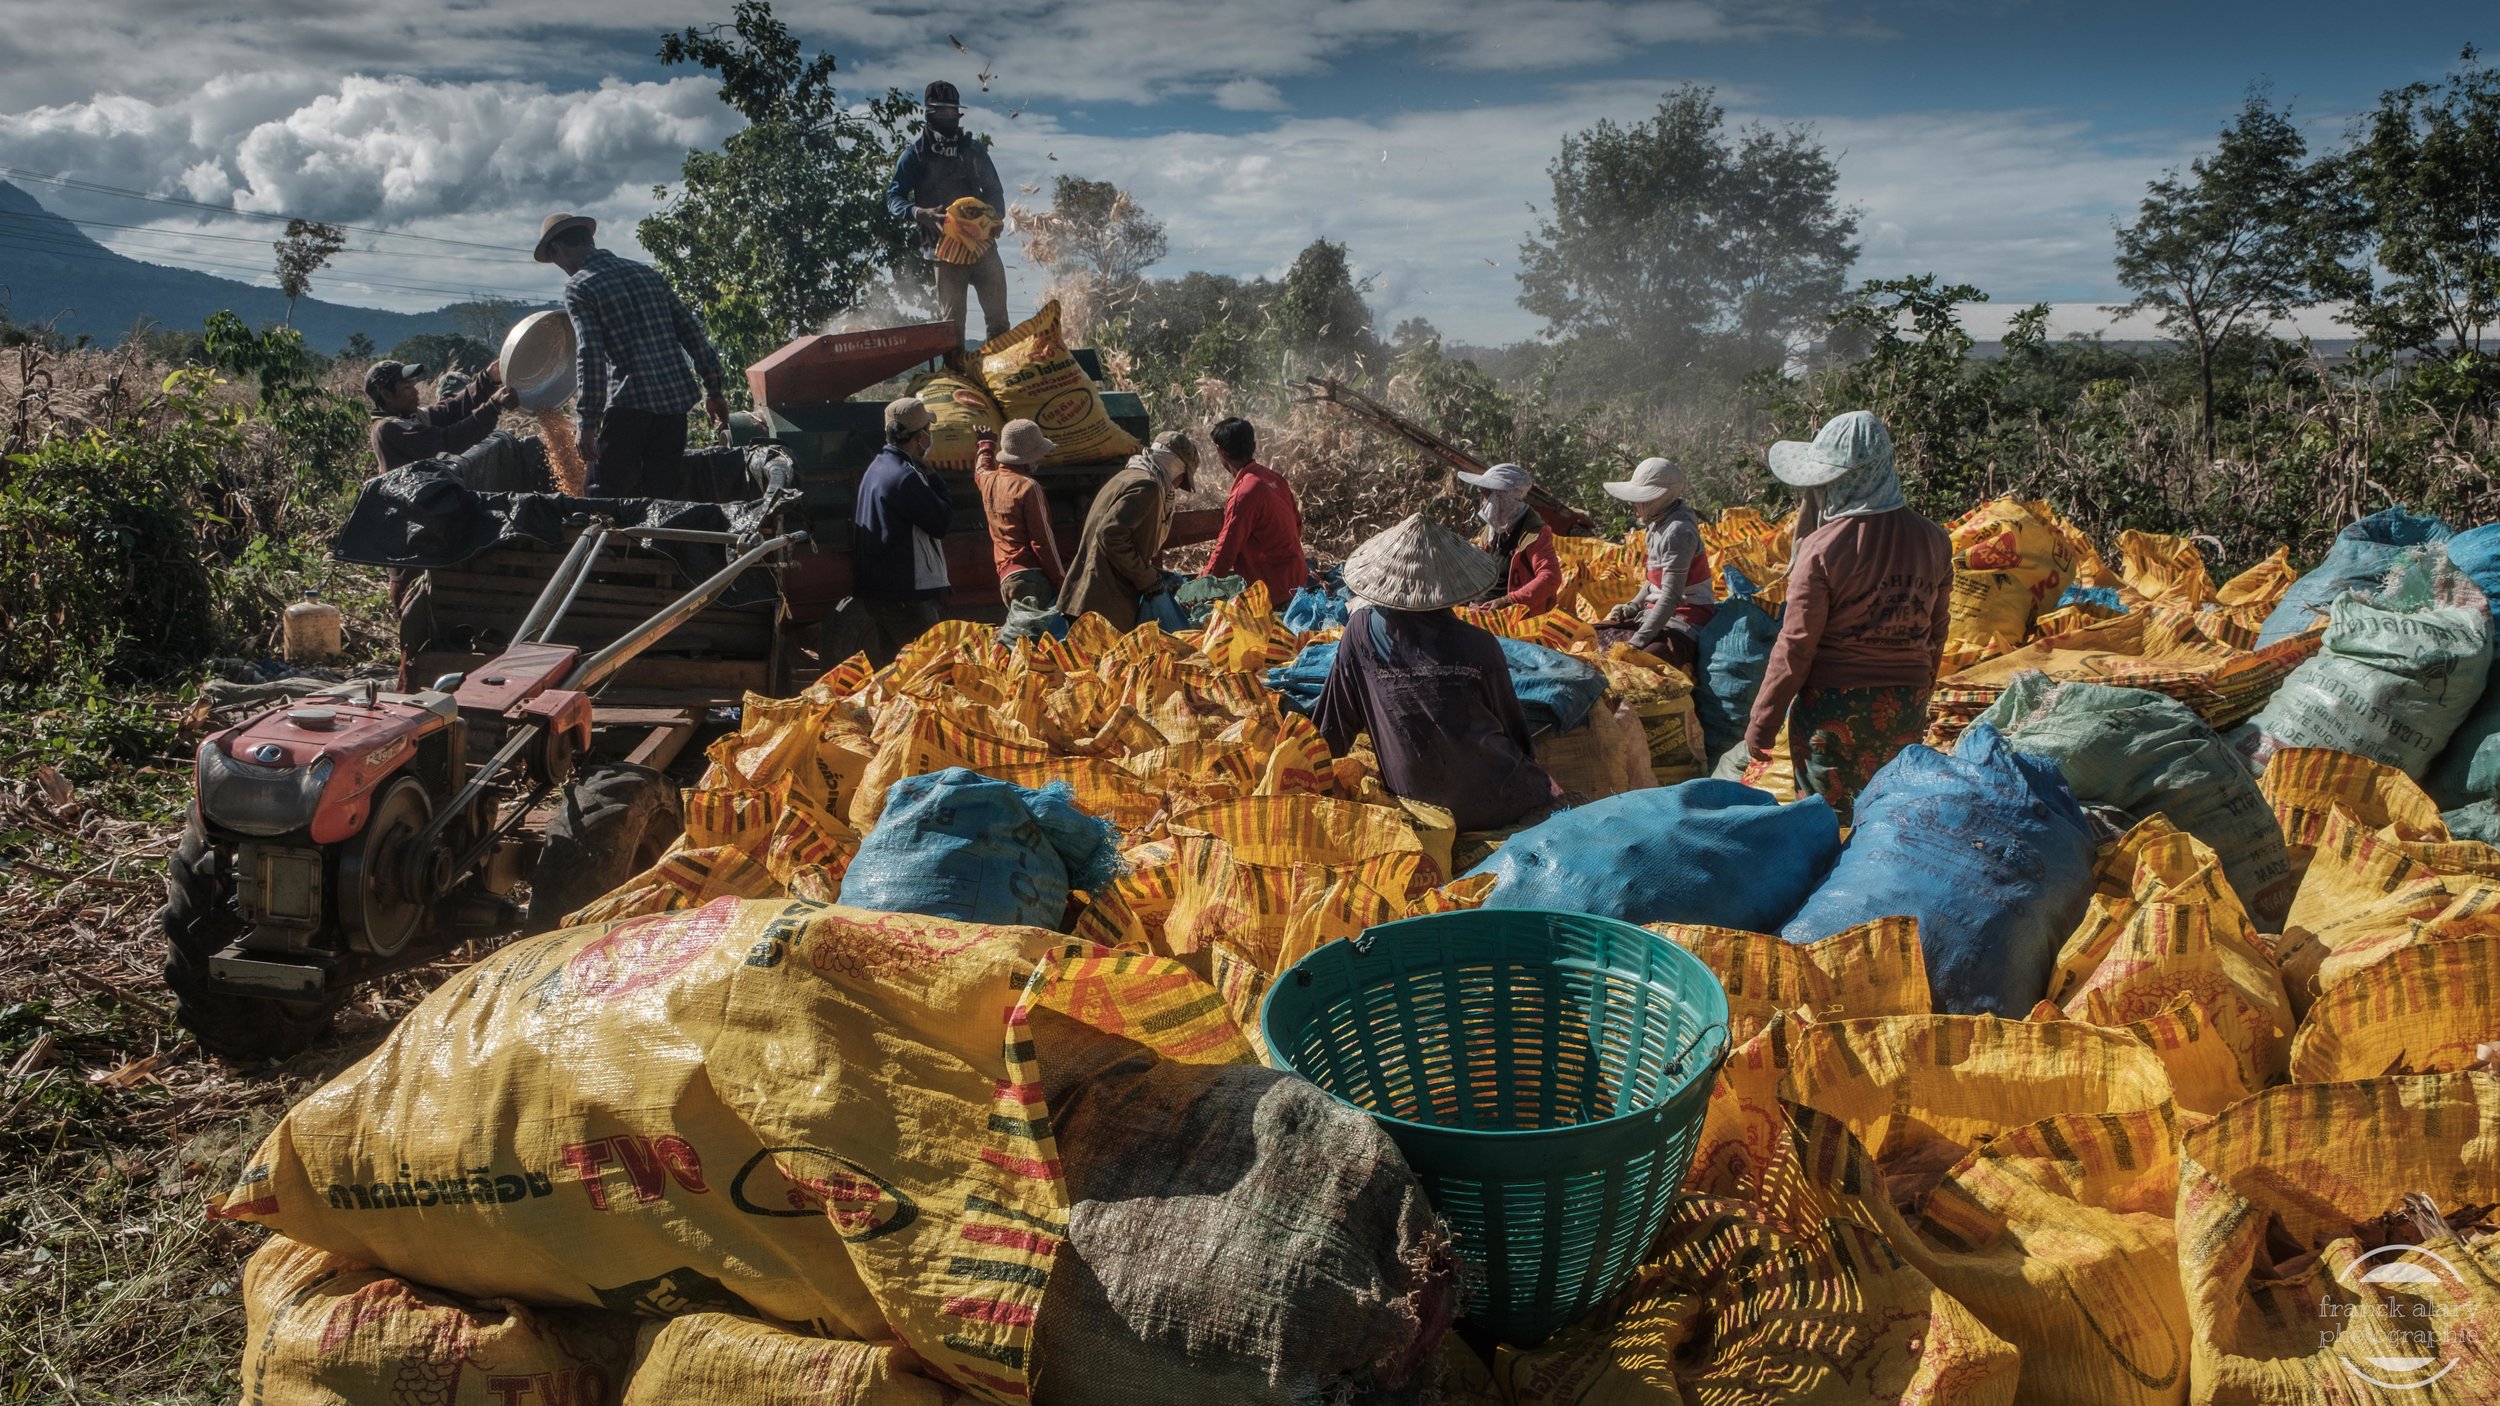   Battage du maïs  &nbsp;  sur le plateau des Bolavens   L'agriculture reste un secteur clé de l'économie laotienne qui représente plus de 45 % du PIB. 73 % de la population vit dans les campagnes. Le gouvernement laotien veut en faire un pilier de l